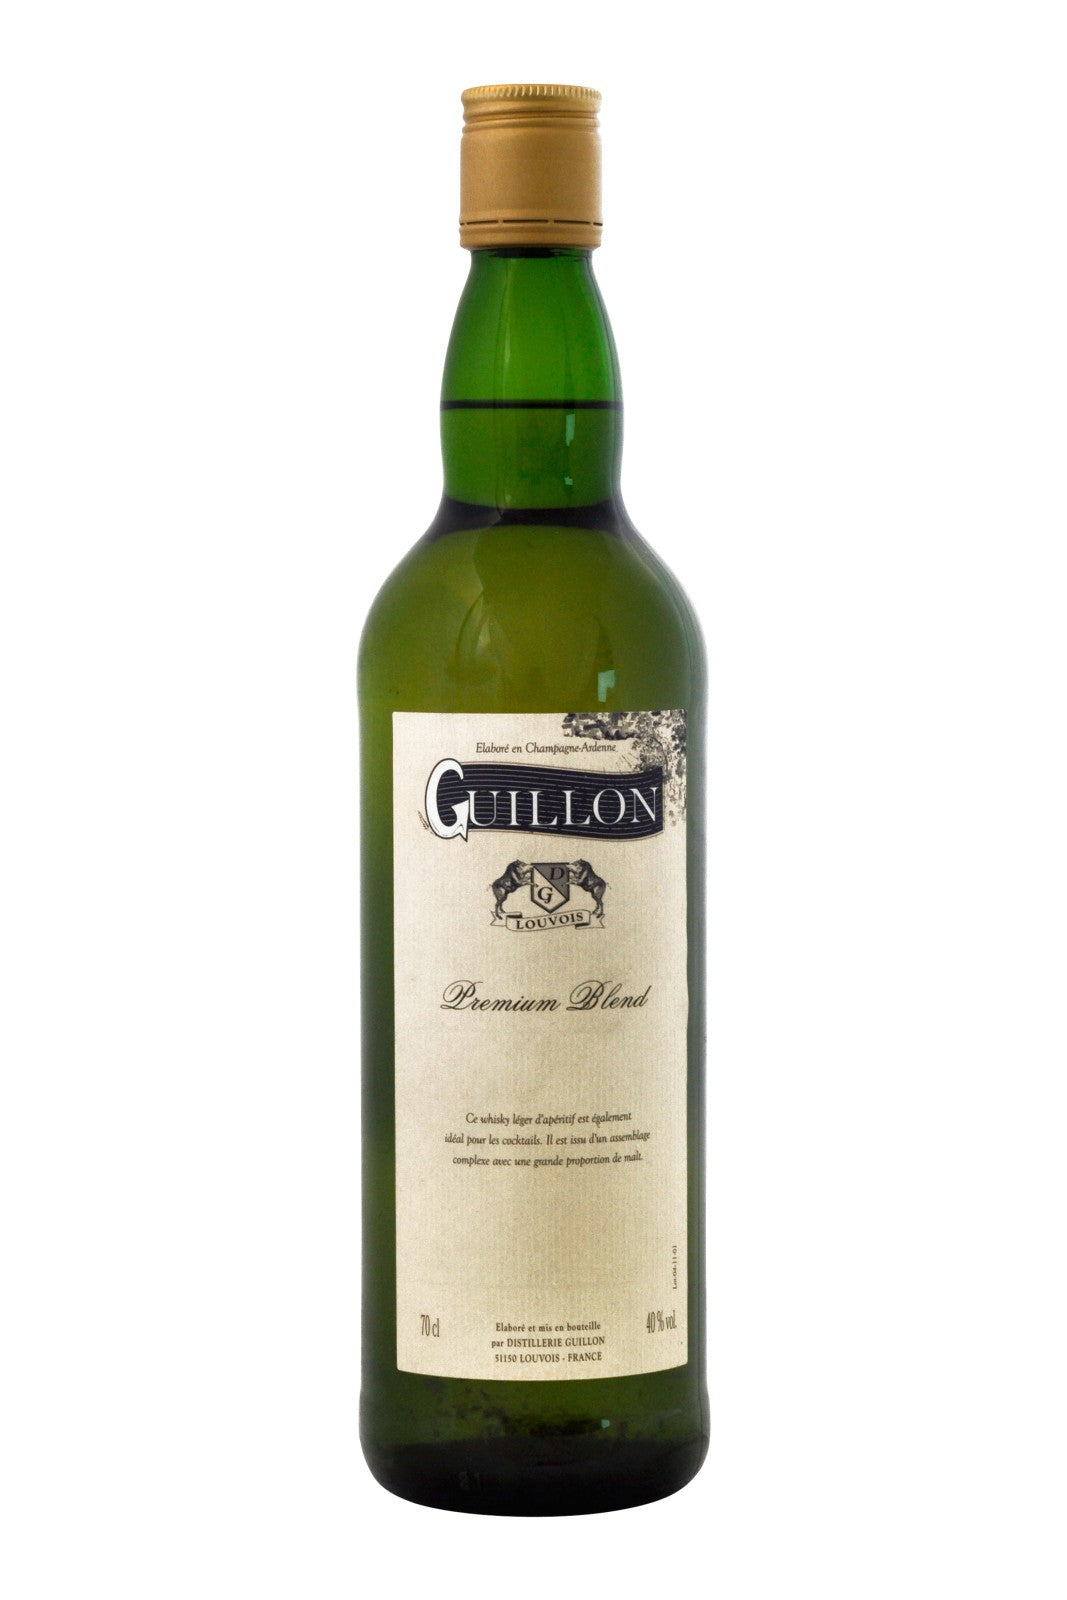 Guillon Premium Blend